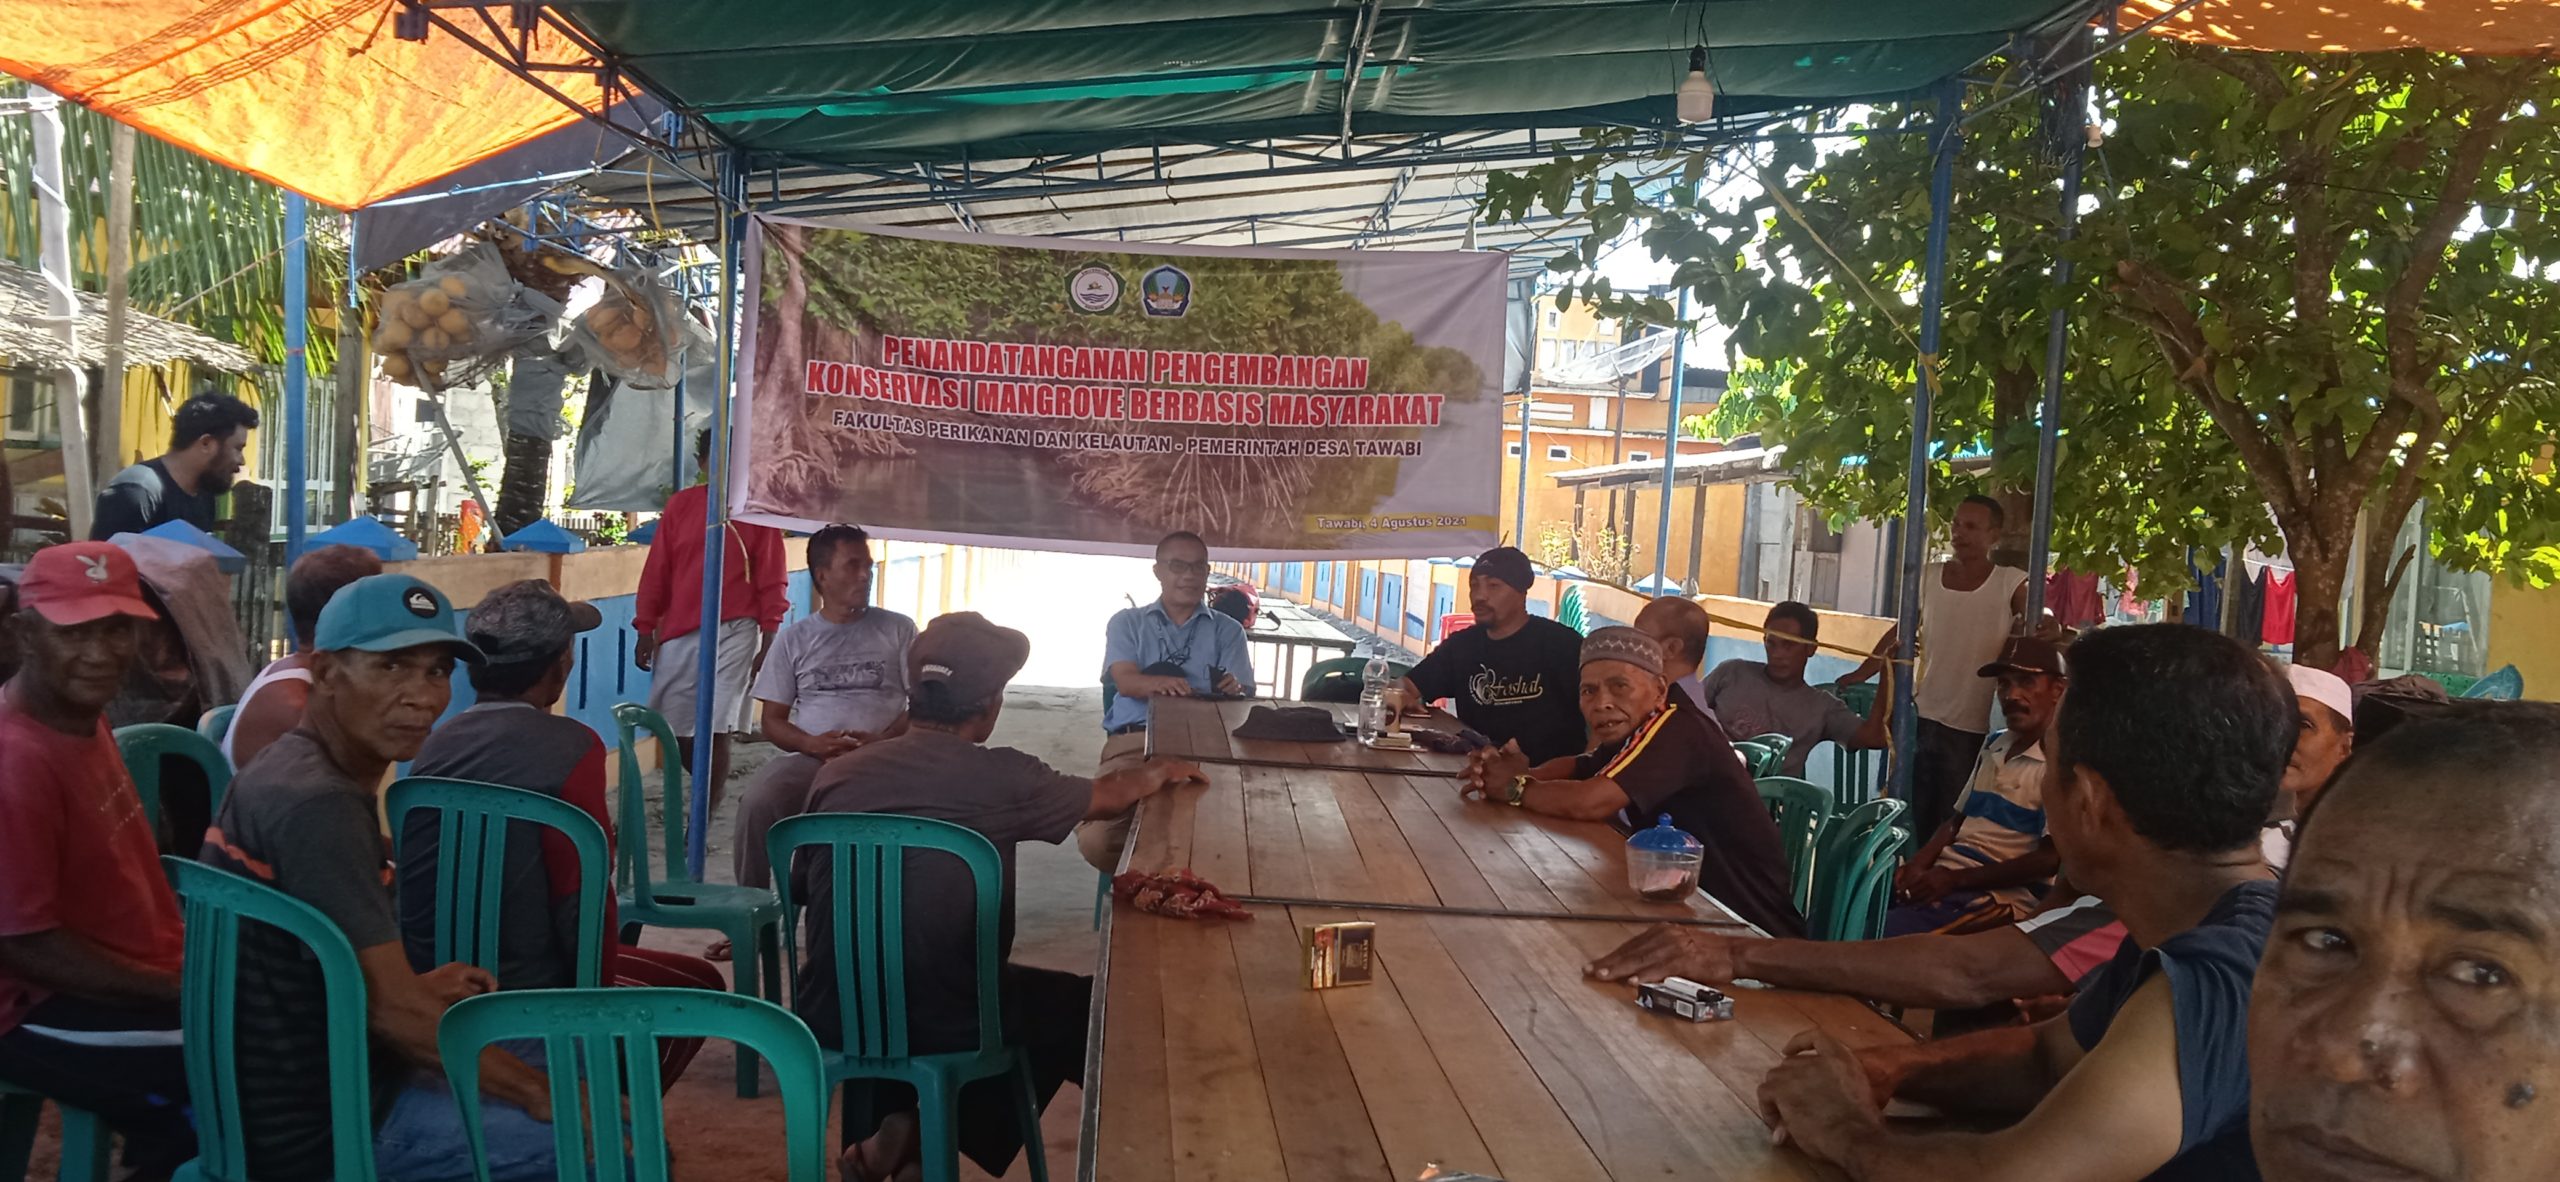 Forum diskusi terfokus membahas menjaga kelestarian mangrove dan ekosistem laut. Foto: Mahmud Ichi/ Mongabay Indonesia